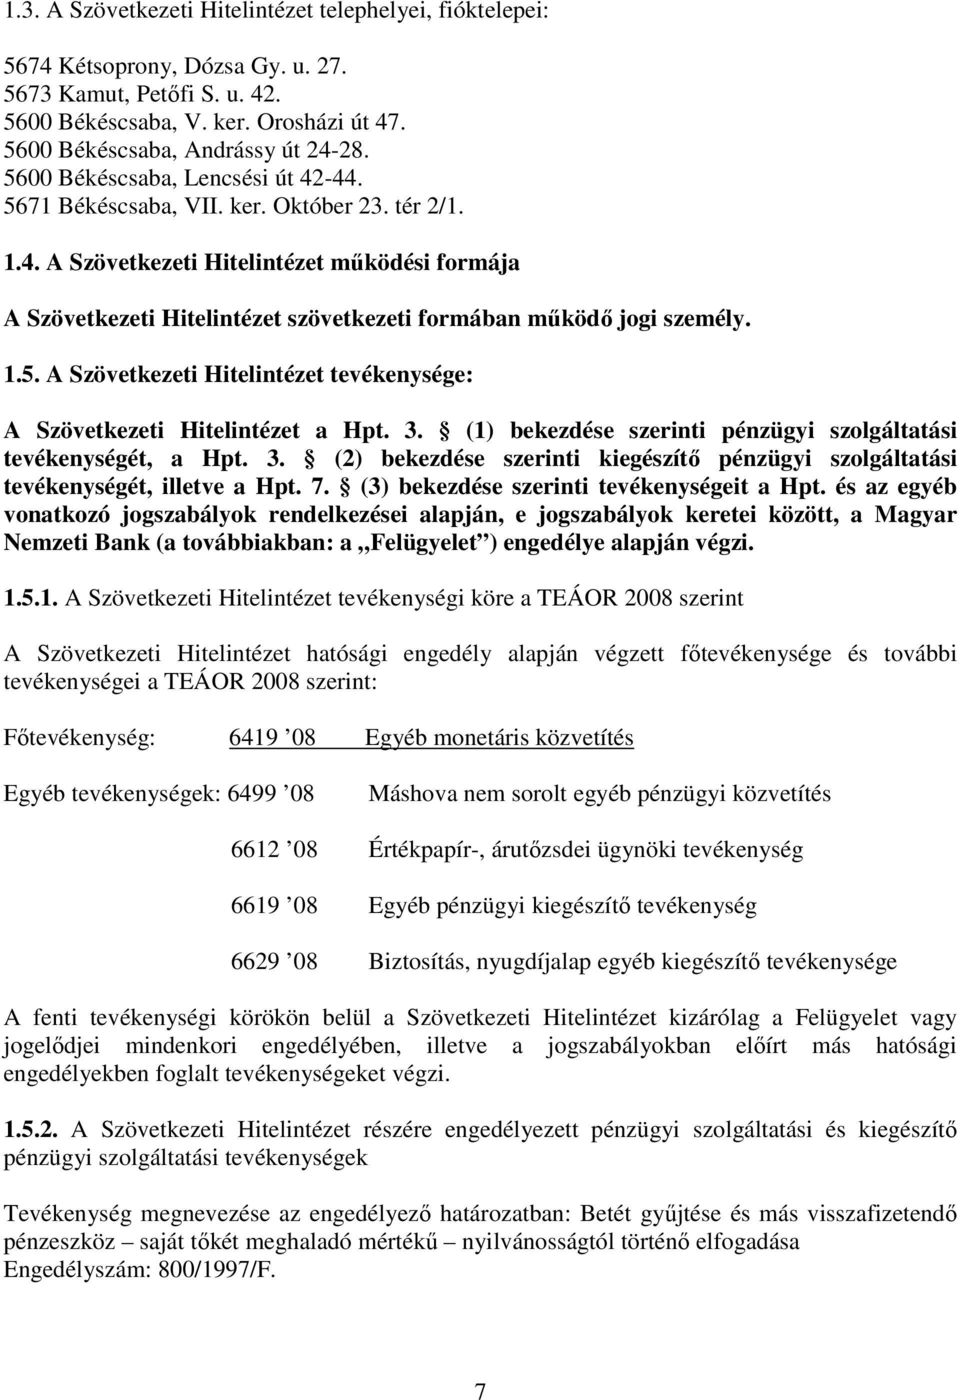 1.5. A Szövetkezeti Hitelintézet tevékenysége: A Szövetkezeti Hitelintézet a Hpt. 3. (1) bekezdése szerinti pénzügyi szolgáltatási tevékenységét, a Hpt. 3. (2) bekezdése szerinti kiegészítı pénzügyi szolgáltatási tevékenységét, illetve a Hpt.